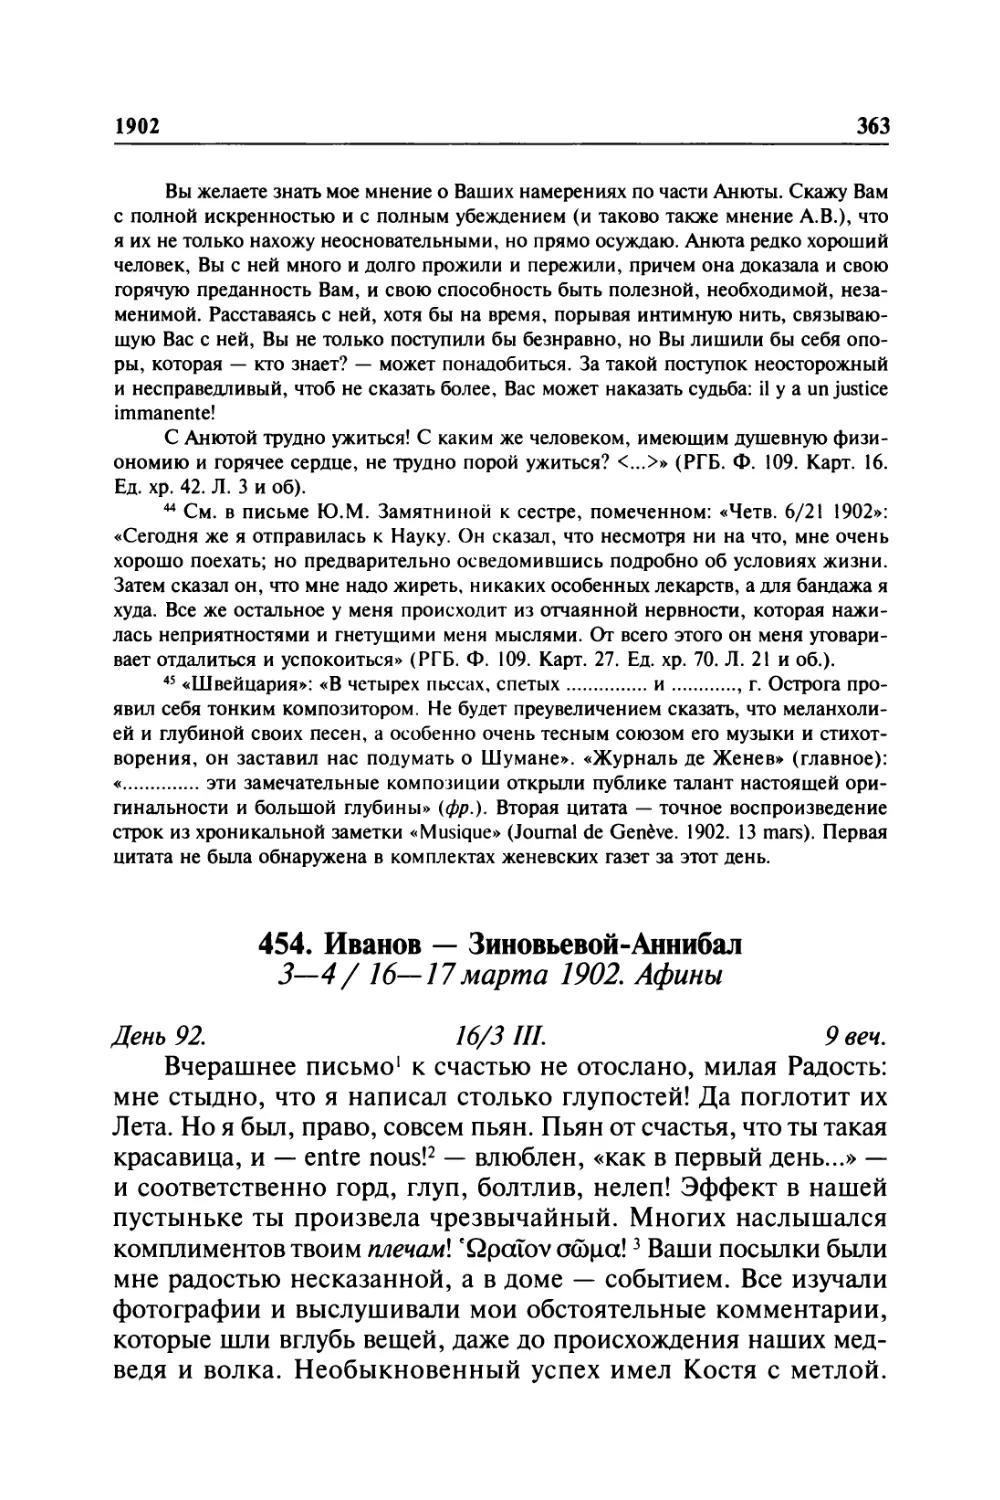 454. Иванов — Зиновьевой-Аннибал. 3—4/ 16—17марта 1902. Афины